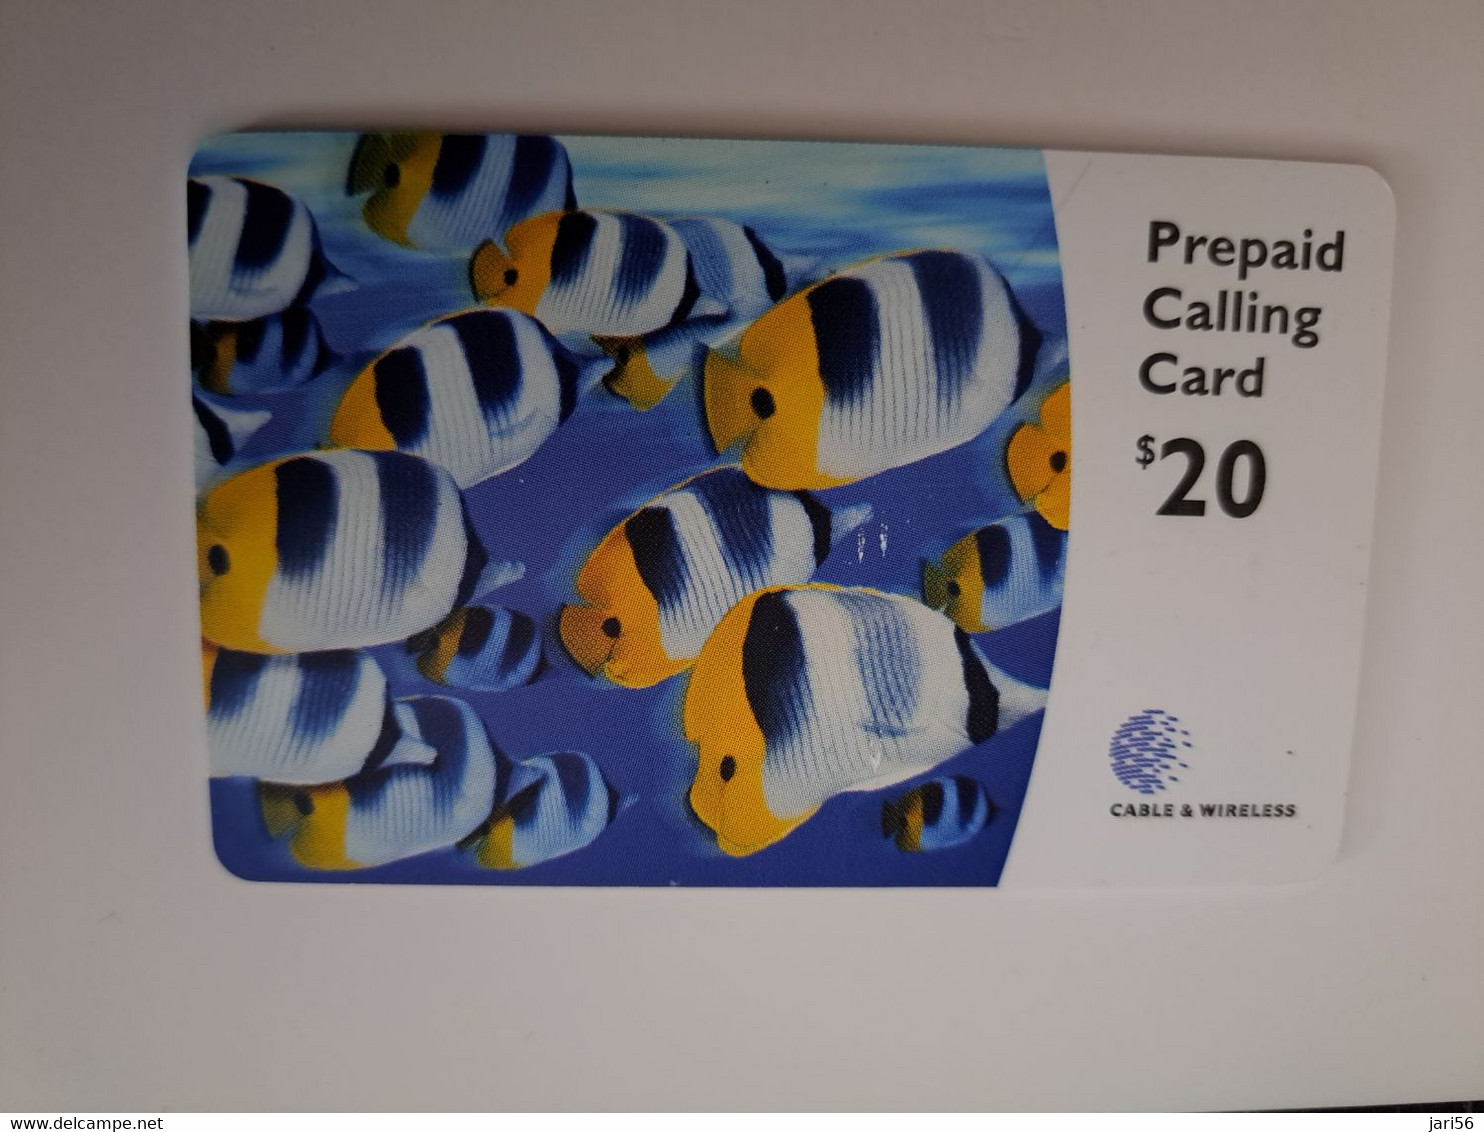 BERMUDA  $ 20,- C&W     / THICK CARD /  BERMUDA  TROPICAL FISH /  PREPAID CARD  Fine USED  **11473** - Bermudes